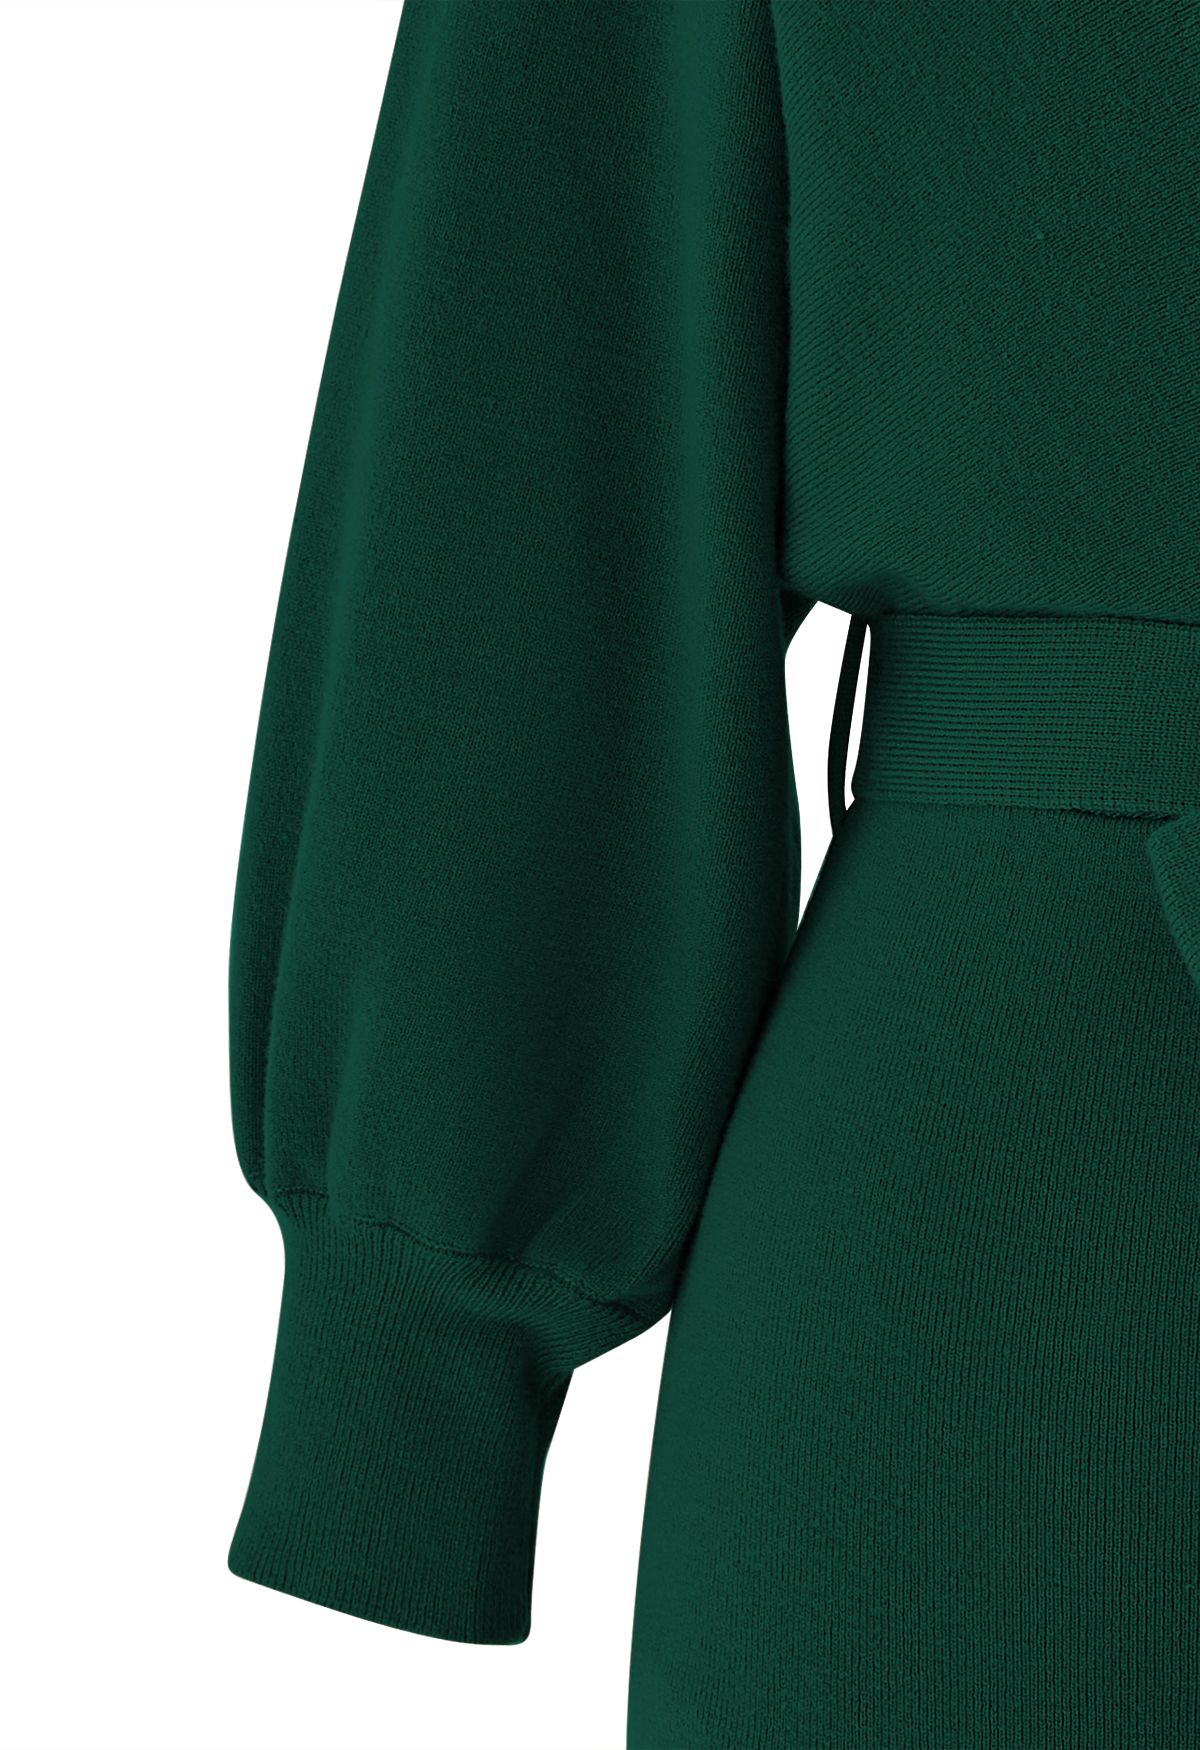 فستان متوسط الطول ملفوف منسوج بلونين مع ربطة عنق باللون الأخضر الداكن